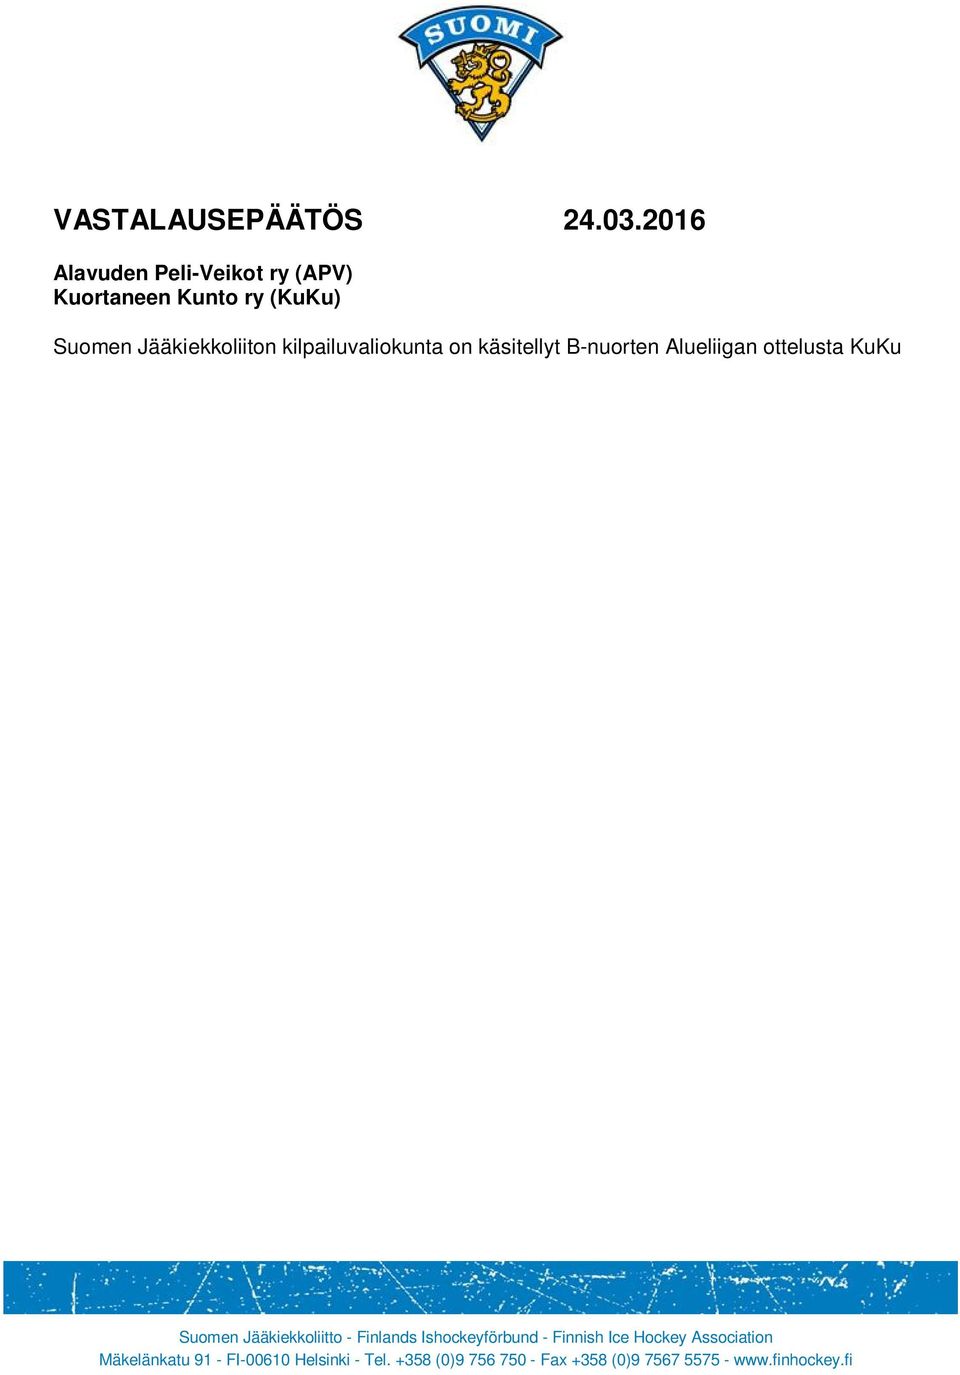 2016) ottelun pöytäkirja - KuKu:n B-nuorten vastuuvalmentajan Janne Pitkäsen vastine - Janne Riihimäen pelaamis- ja rangaistushistoria kaudella 15-16 APV on tehnyt vastalauseen ko. ottelusta.